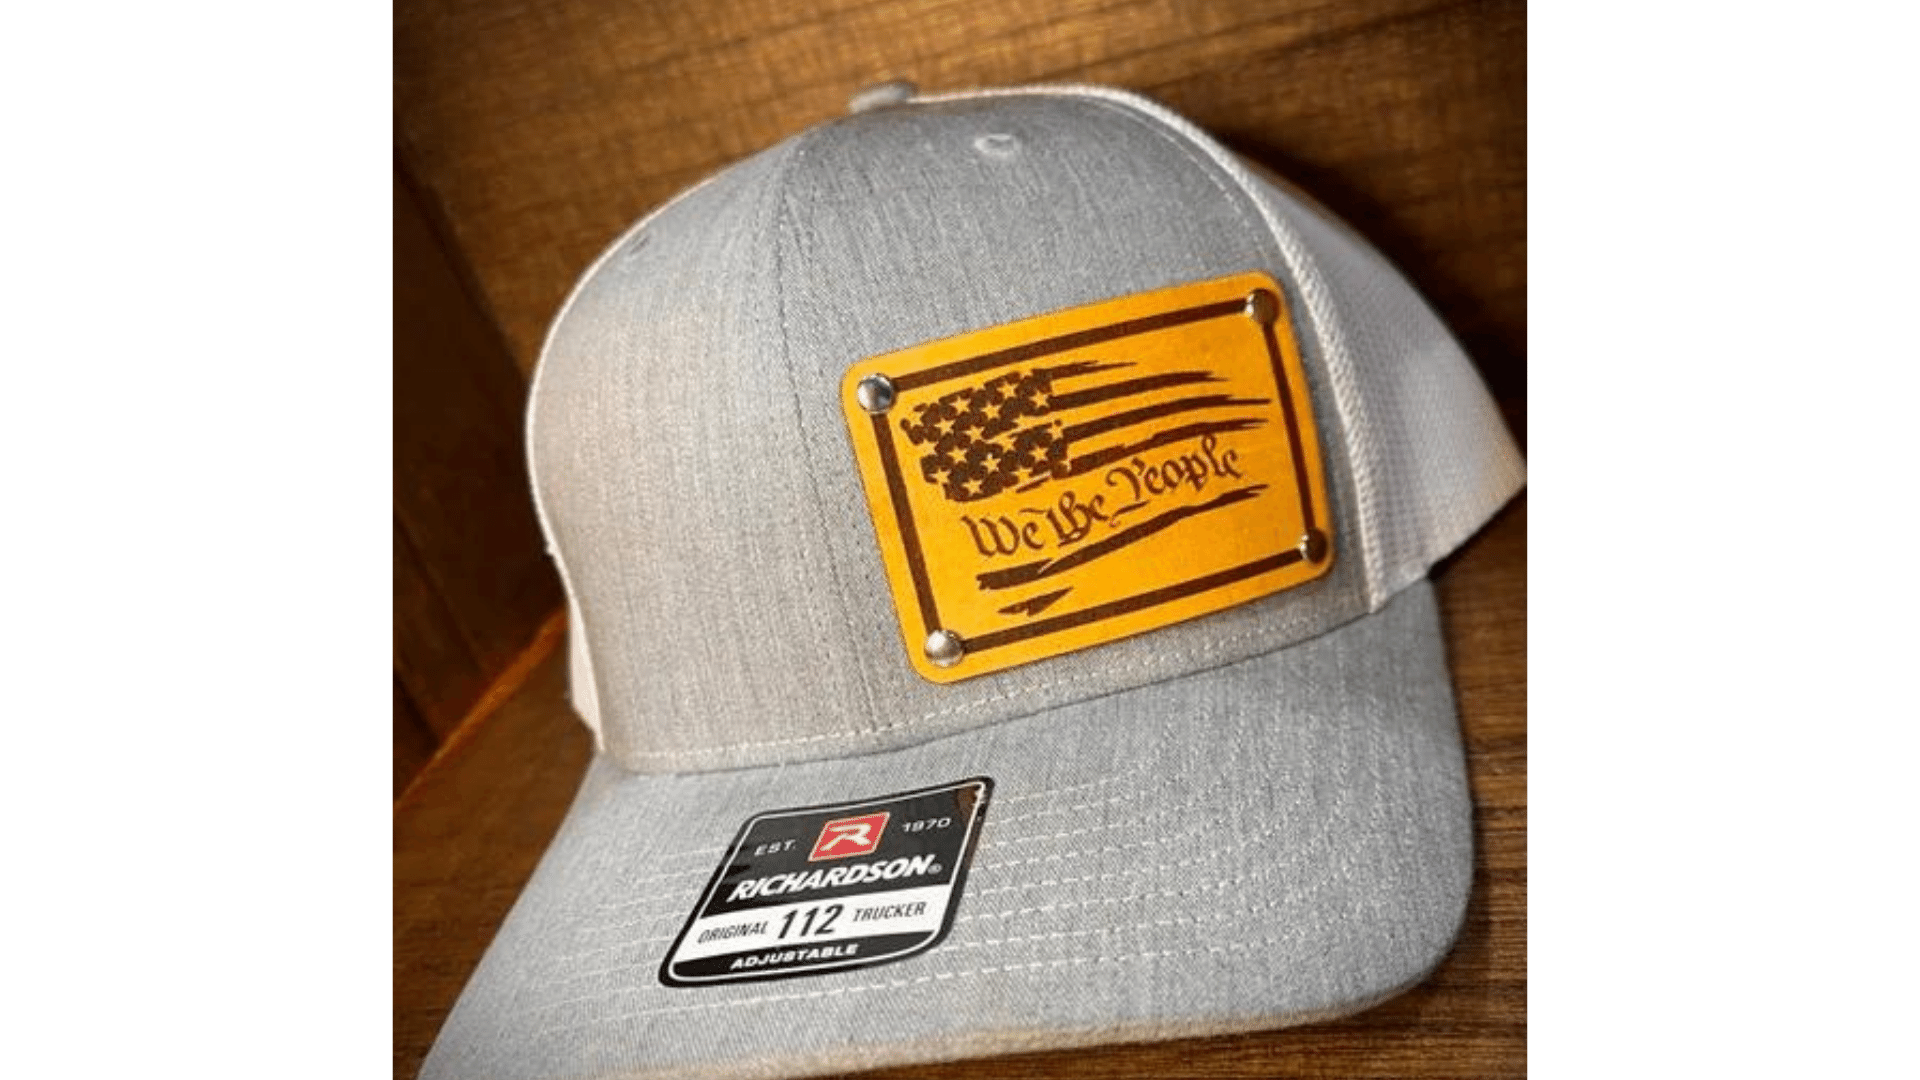 Richardson 112 Patriotic Hat | Leather Patch Hats